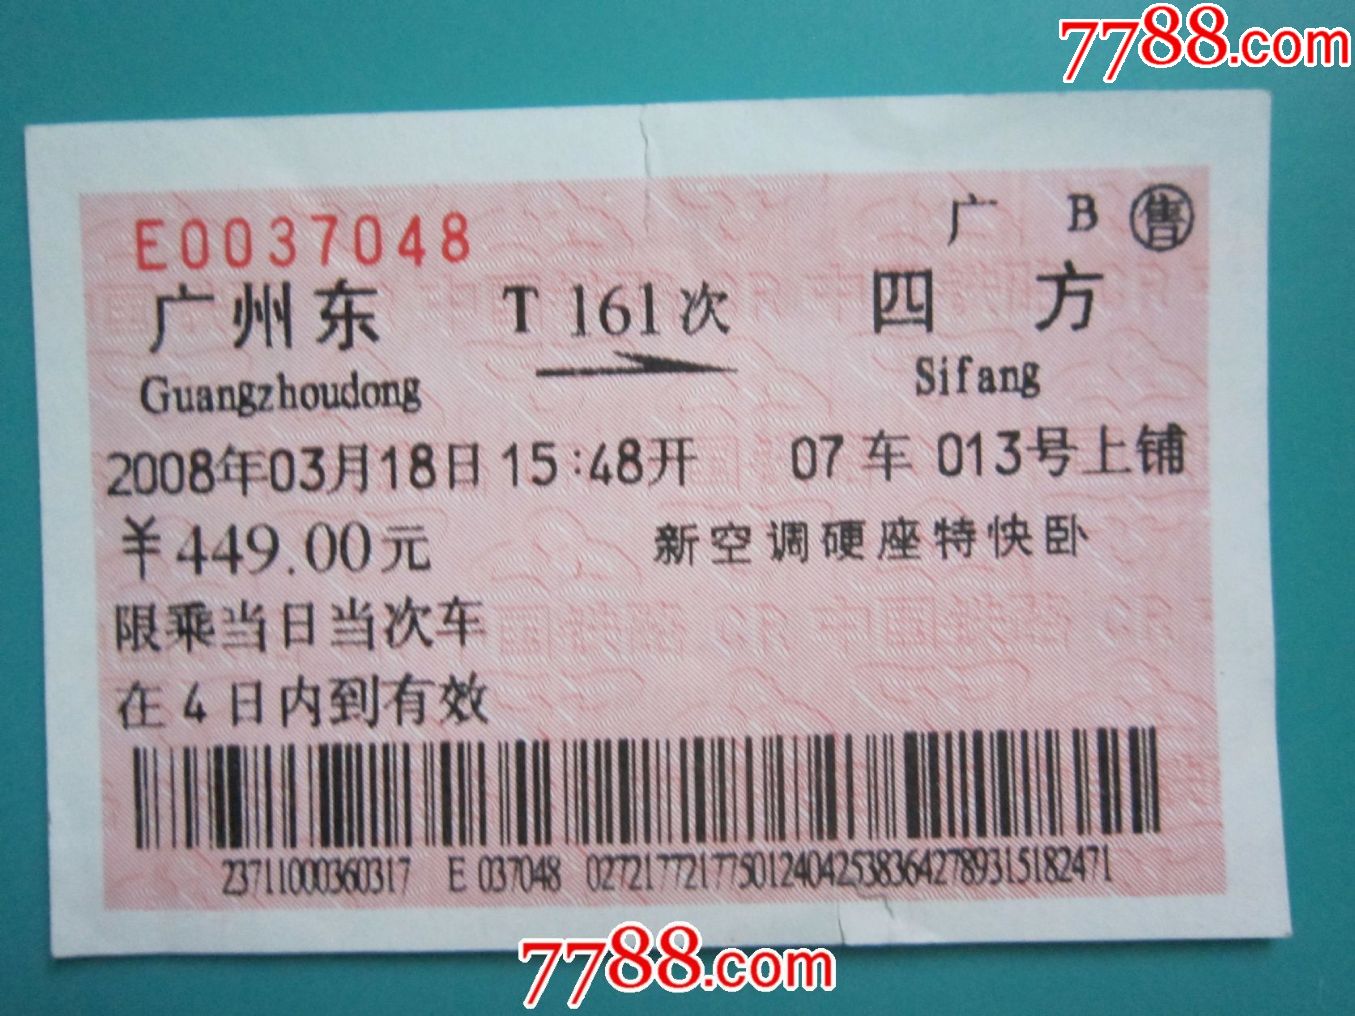 广州东--四方T161次火车票